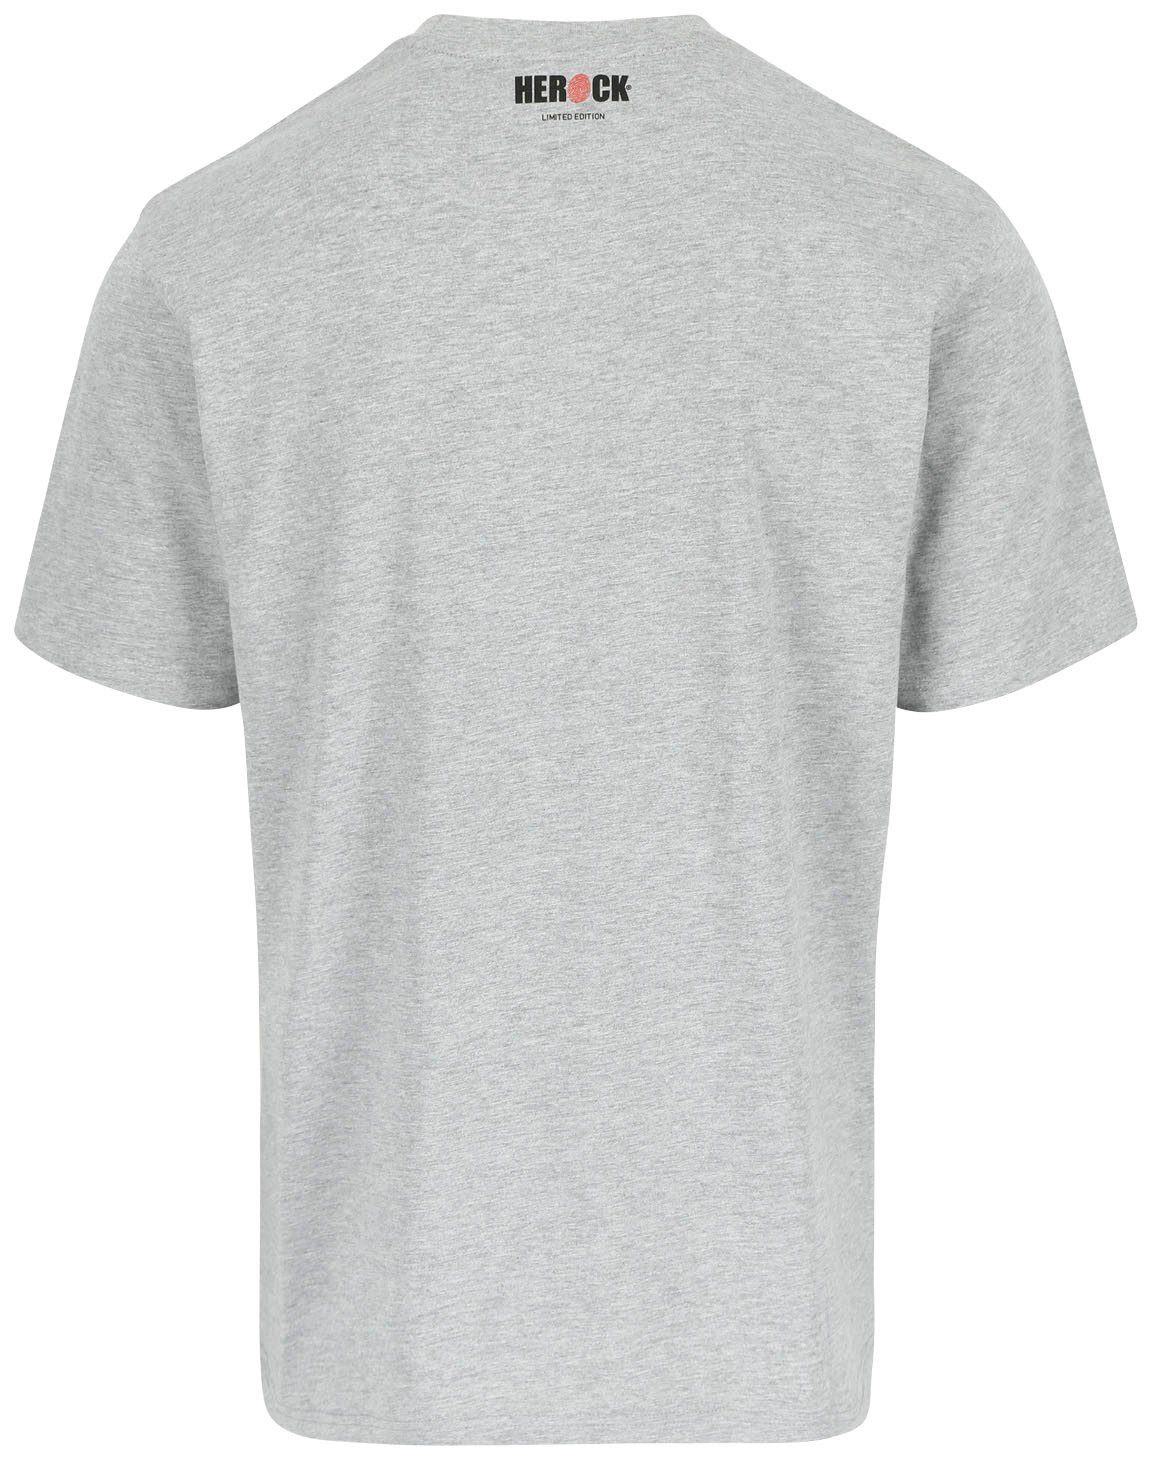 Worker Edition, Herock in verschiedene erhältlich Farben hellgrau Limited T-Shirt